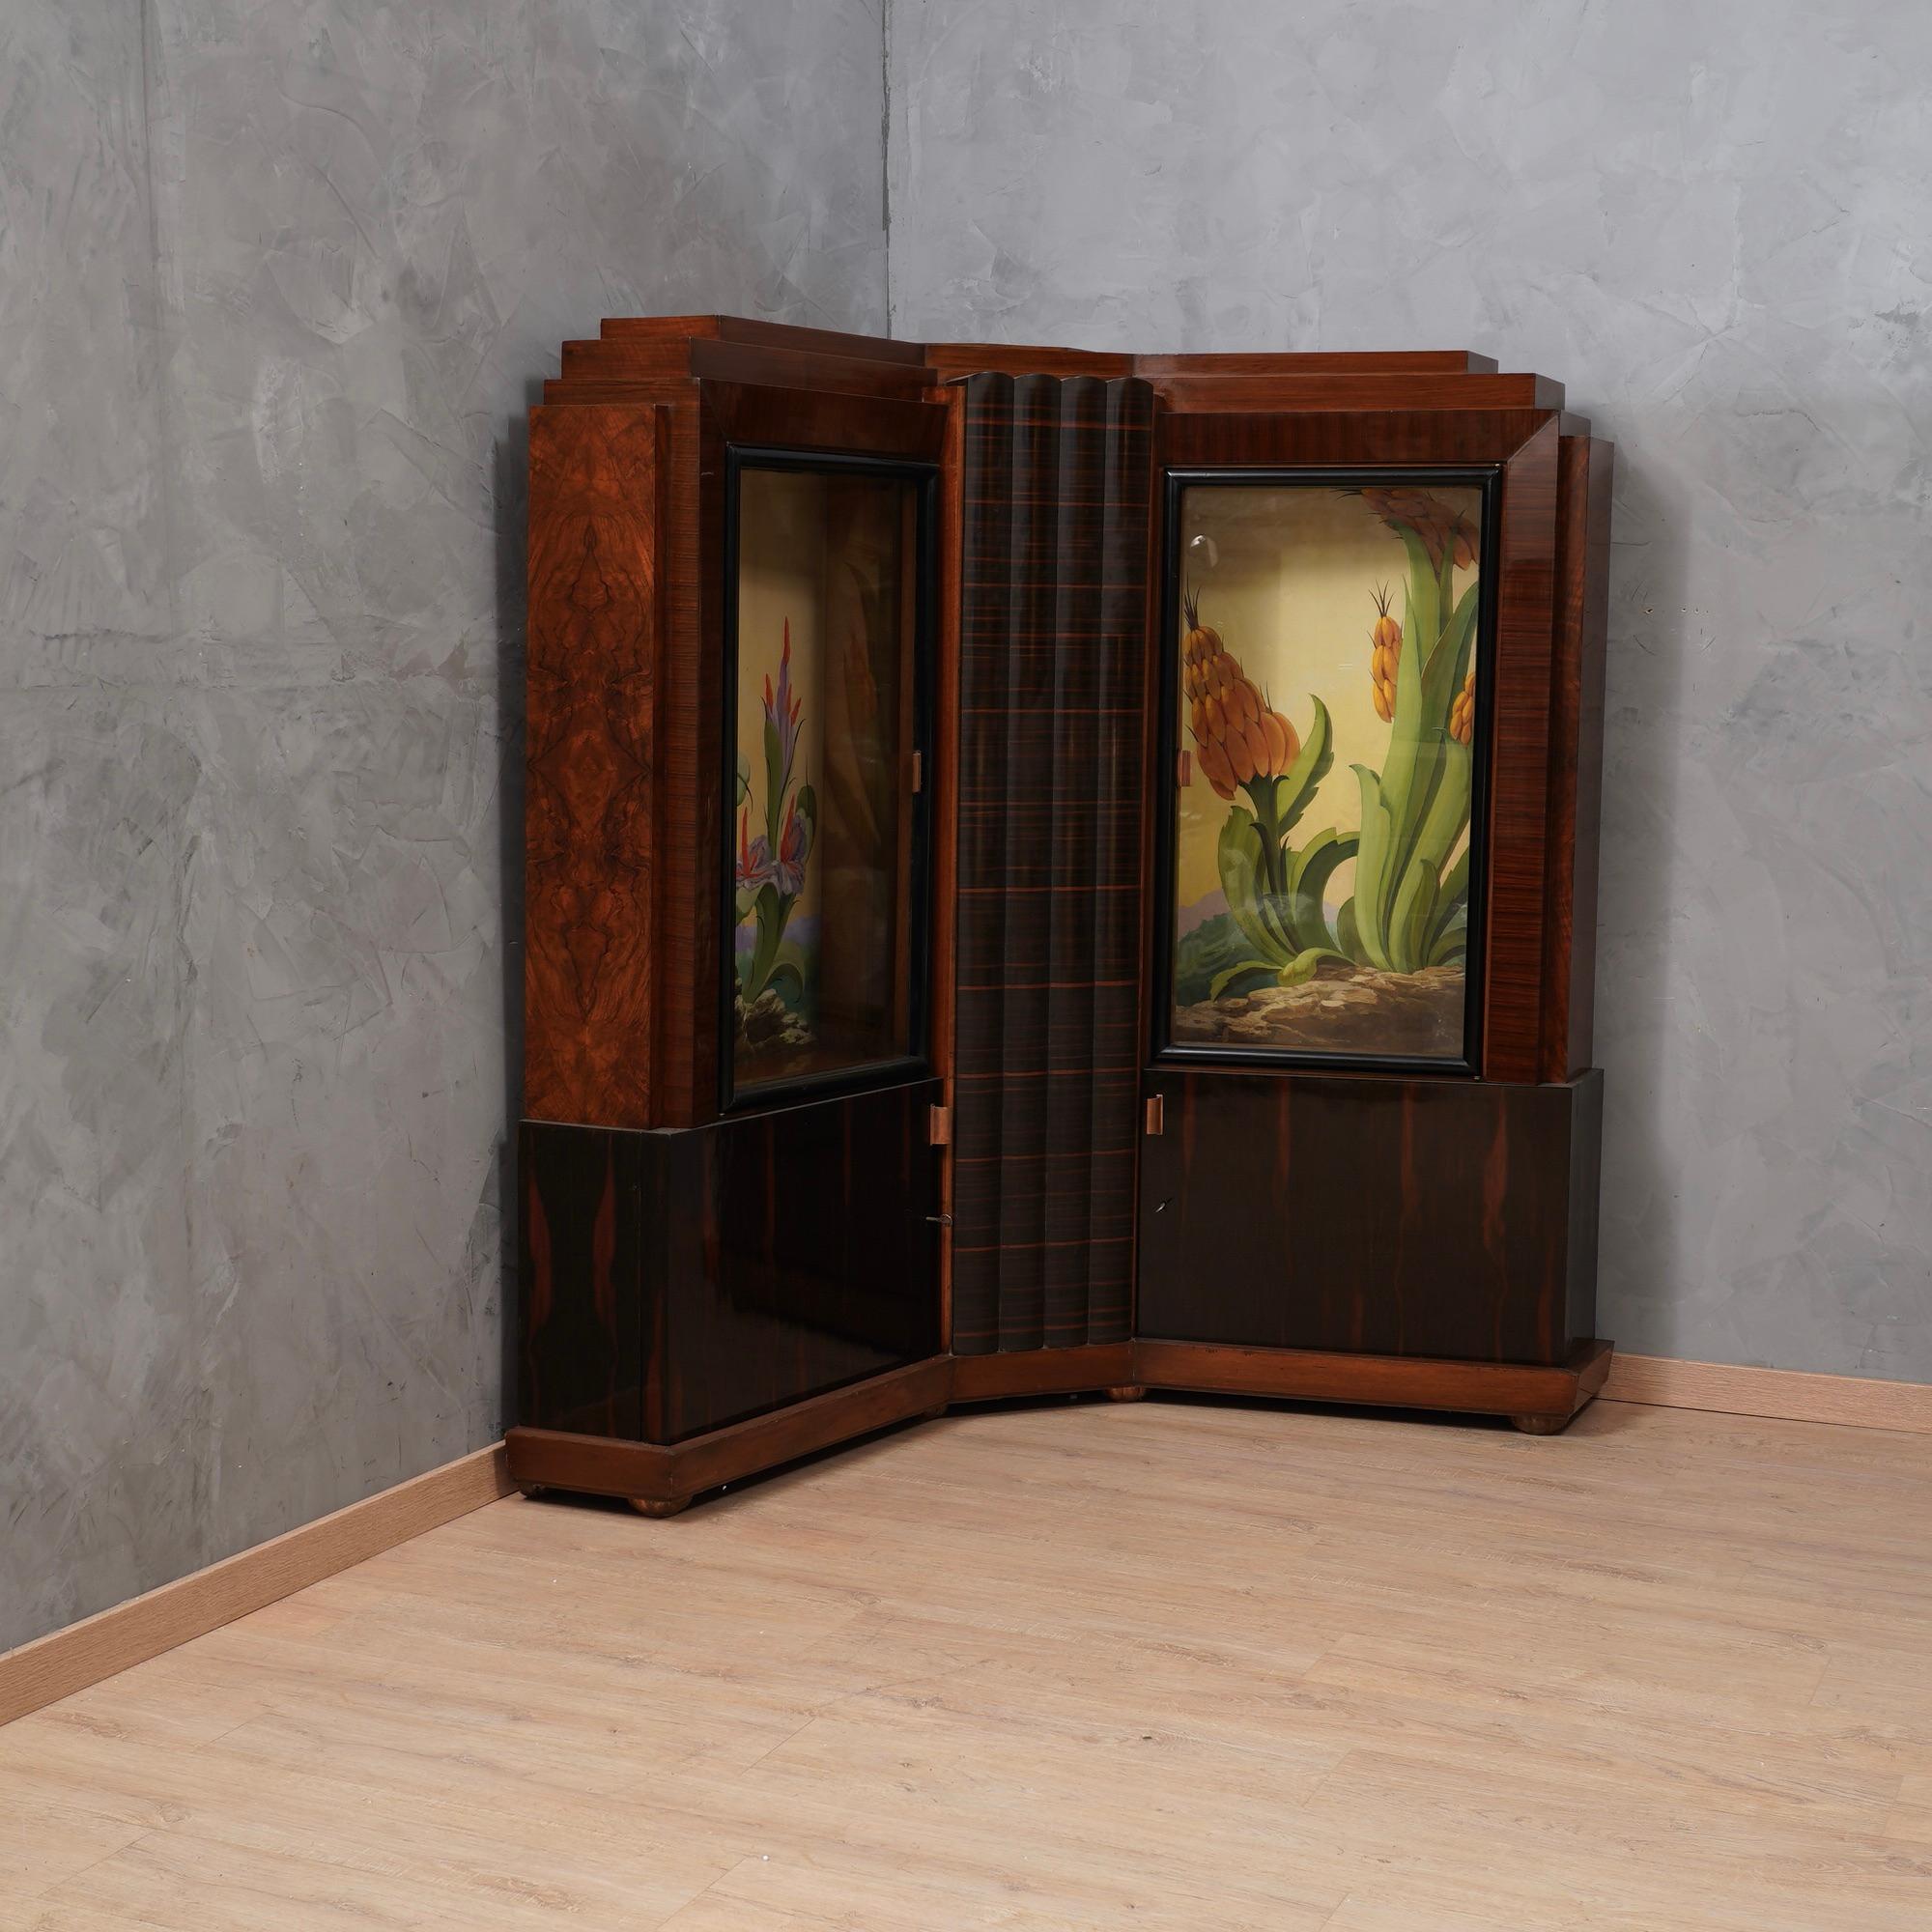 Erstaunlich Eckschrank zugeschrieben Marcello Piacentini, wichtige italienische Möbel in Nussbaum und Makassar-Holz furniert, um seine einzigartige Design und die beiden inneren Gemälde, fein gemalt beachten.

Eckschrank mit vier Türen, zwei hohe